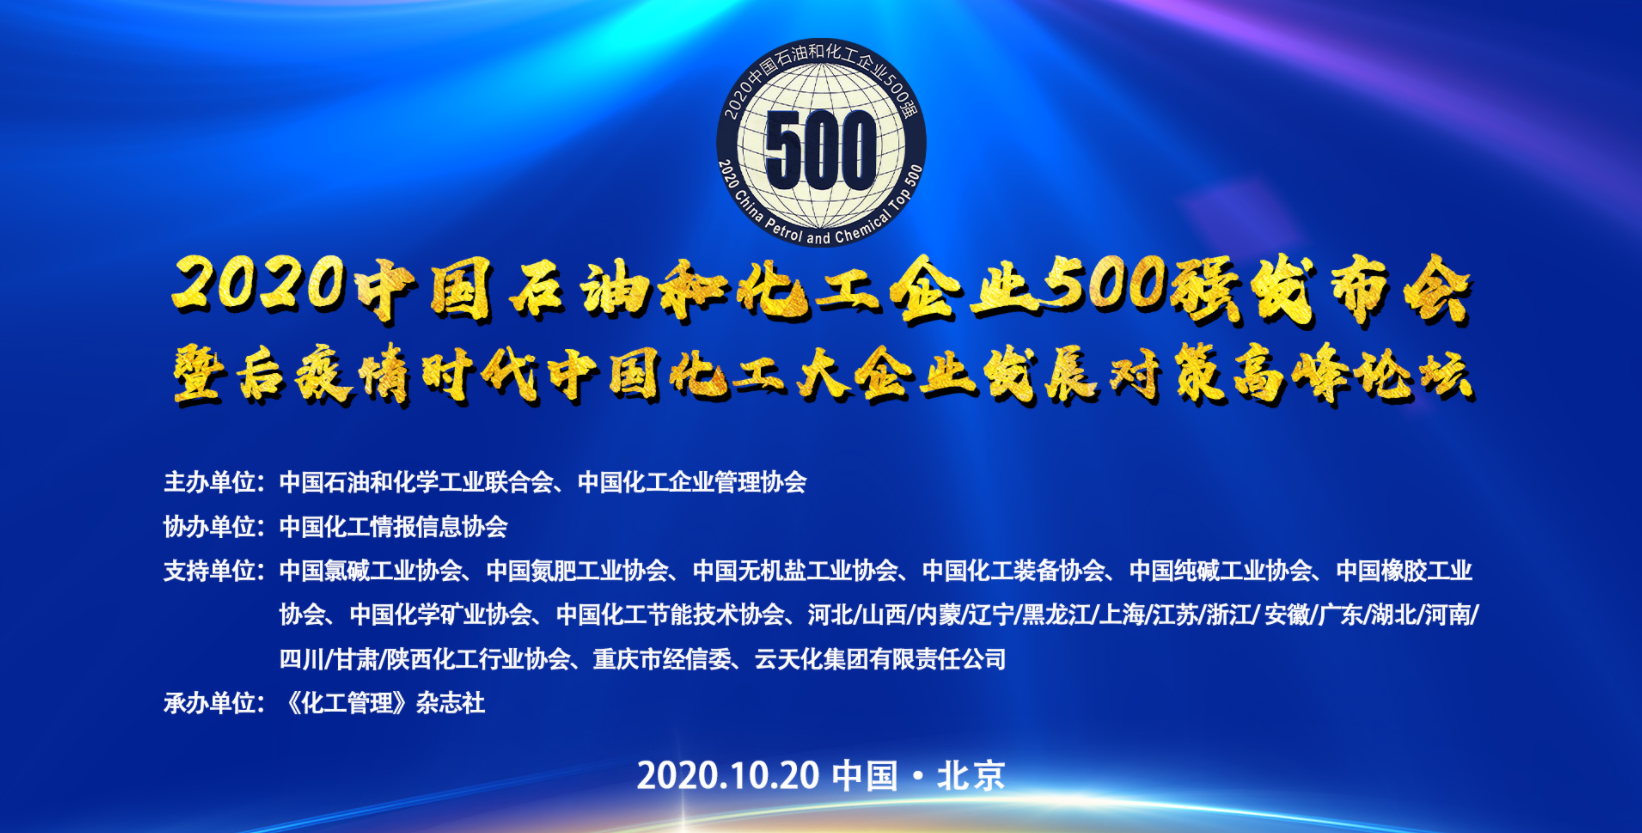 2020中国石油和化工企业500强发布 东明石化位列第12名